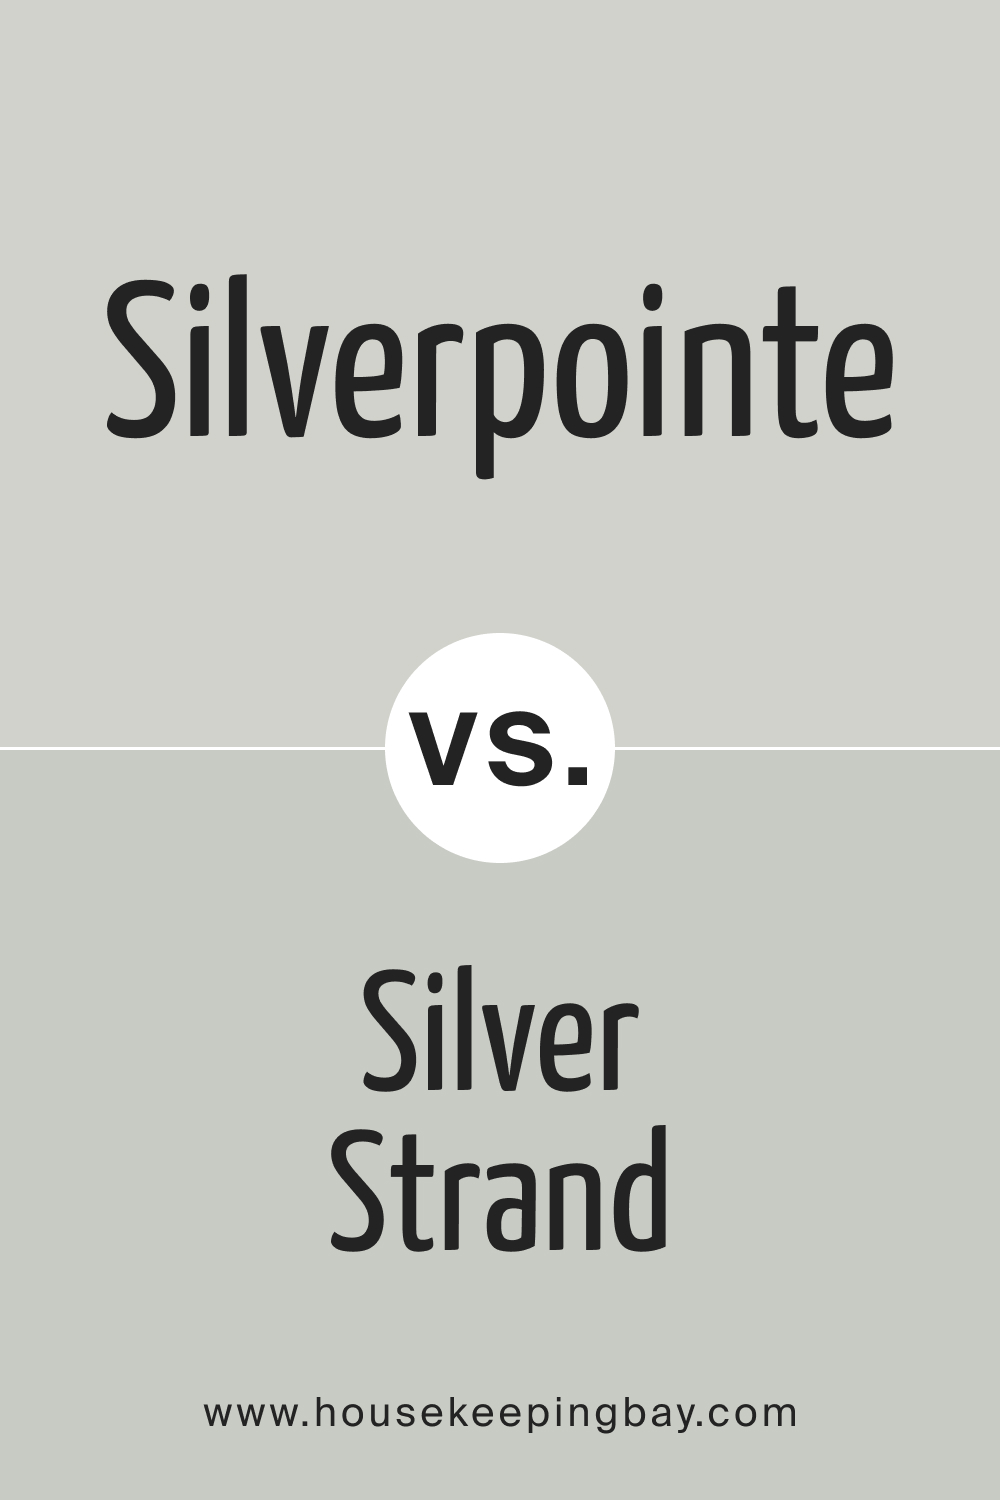 SW Silverpointe vs Silver Strand